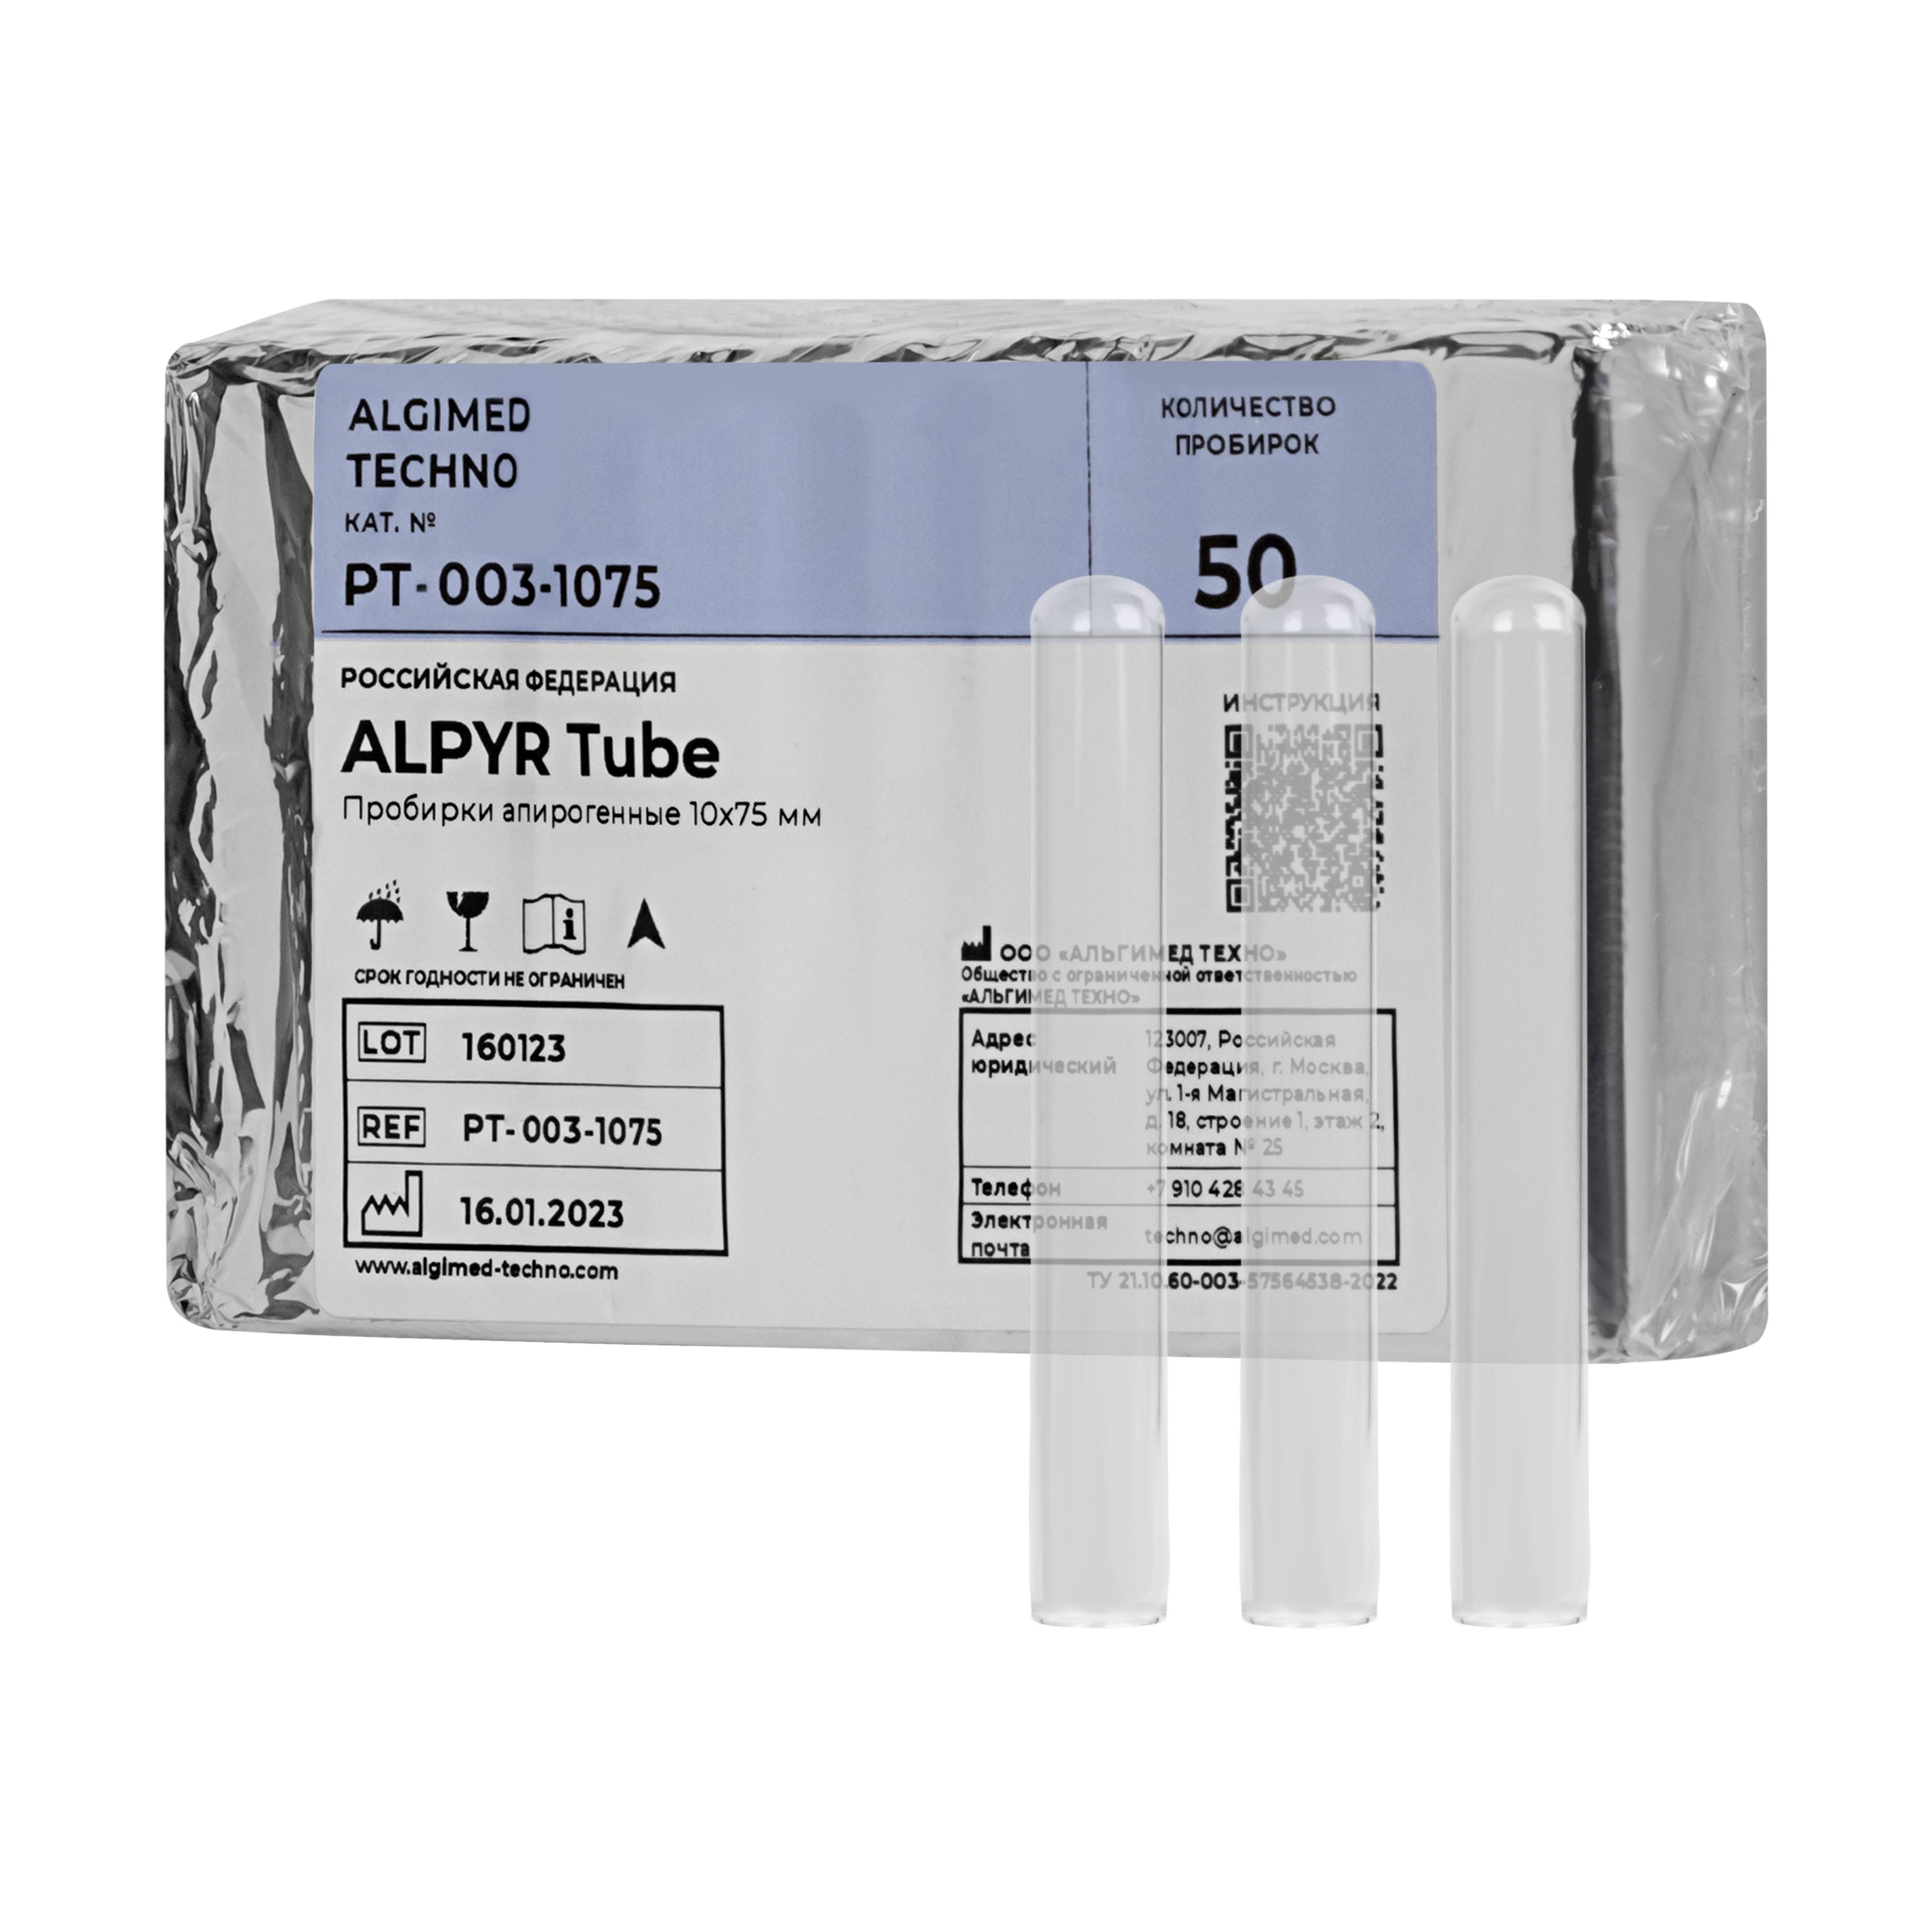 أنابيب «ALPYR Tube» 10×75 ملم  لاختبار Limulus Amebocyte Lysate 